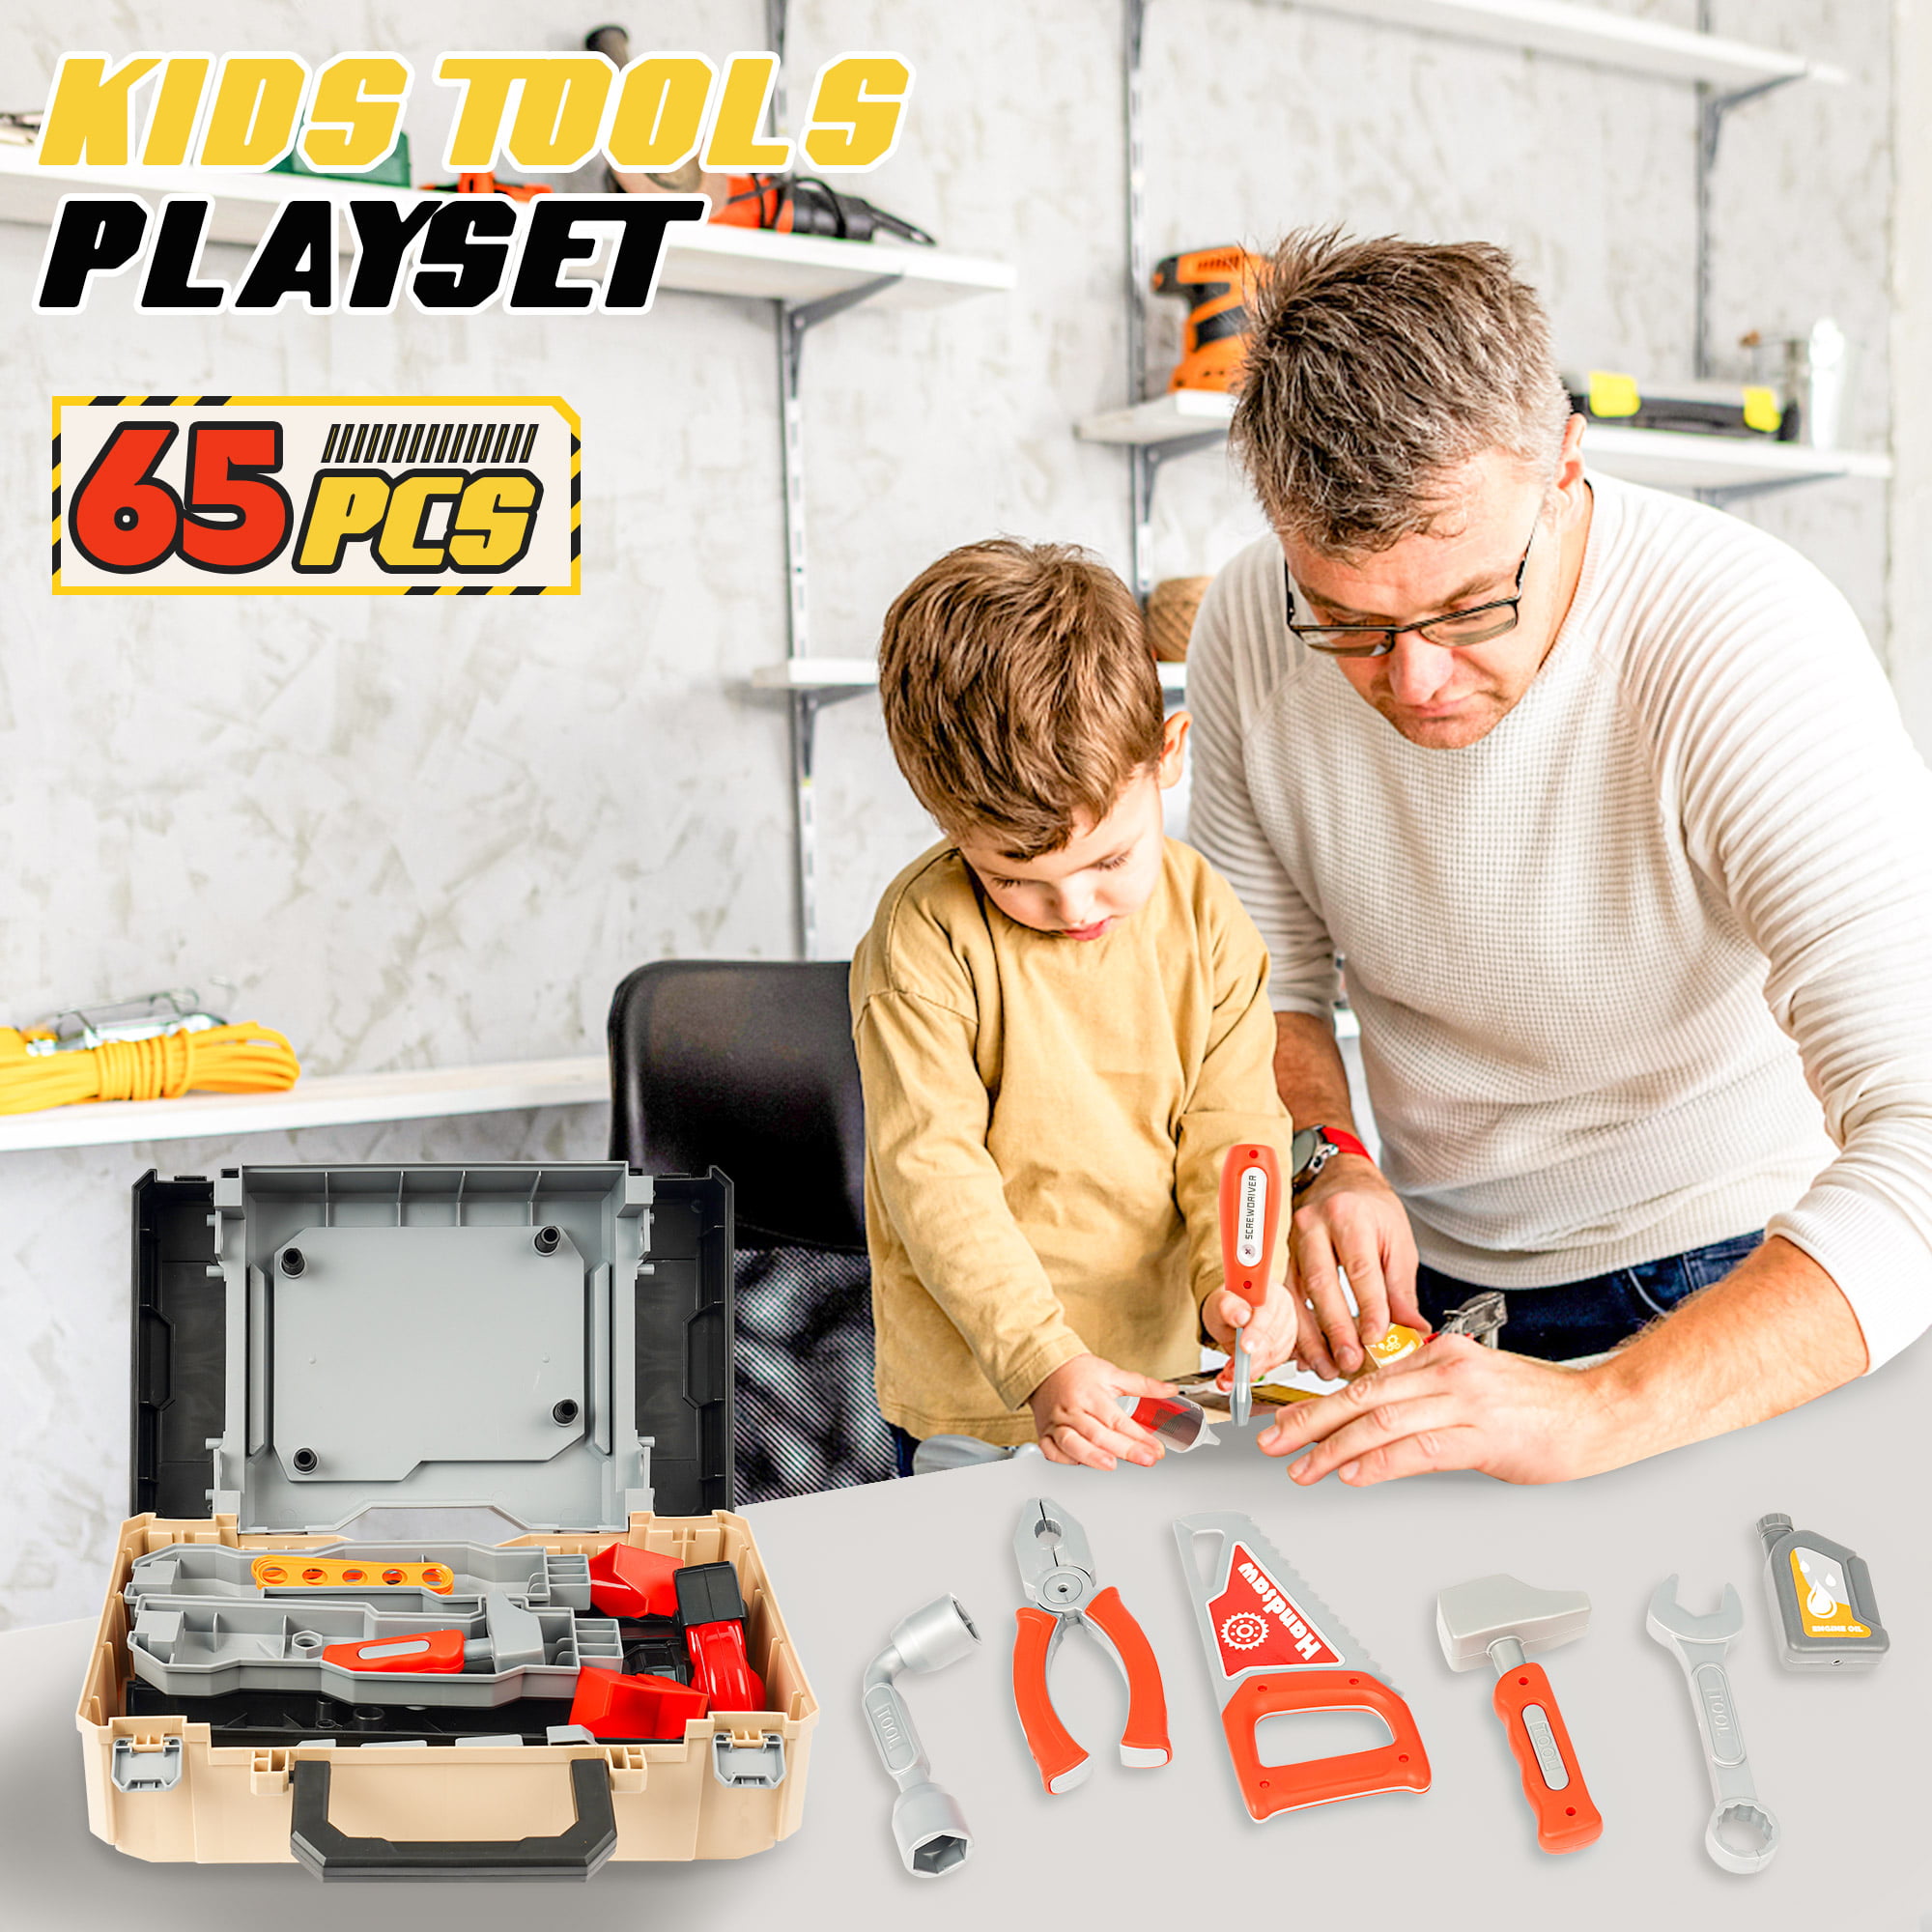 YCFUN 82 Pcs Toy Workbench for Boys Toddlers, Kids Tool Set Kids